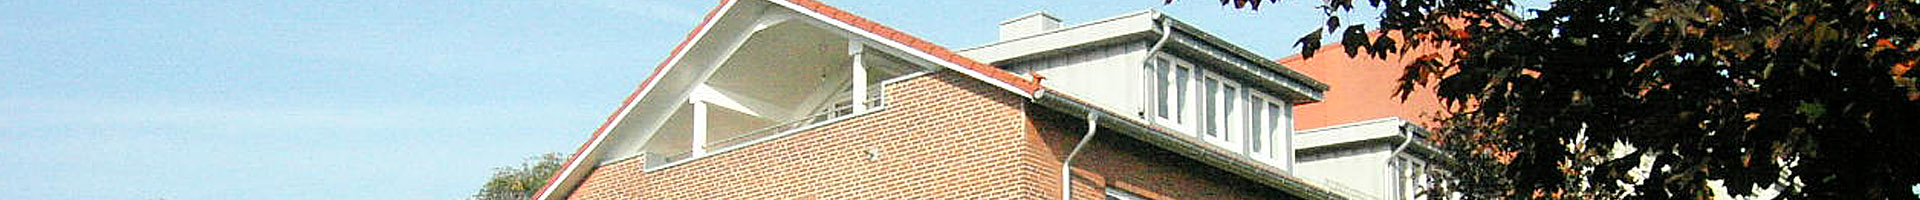 Projekt: Dachgeschossausbau